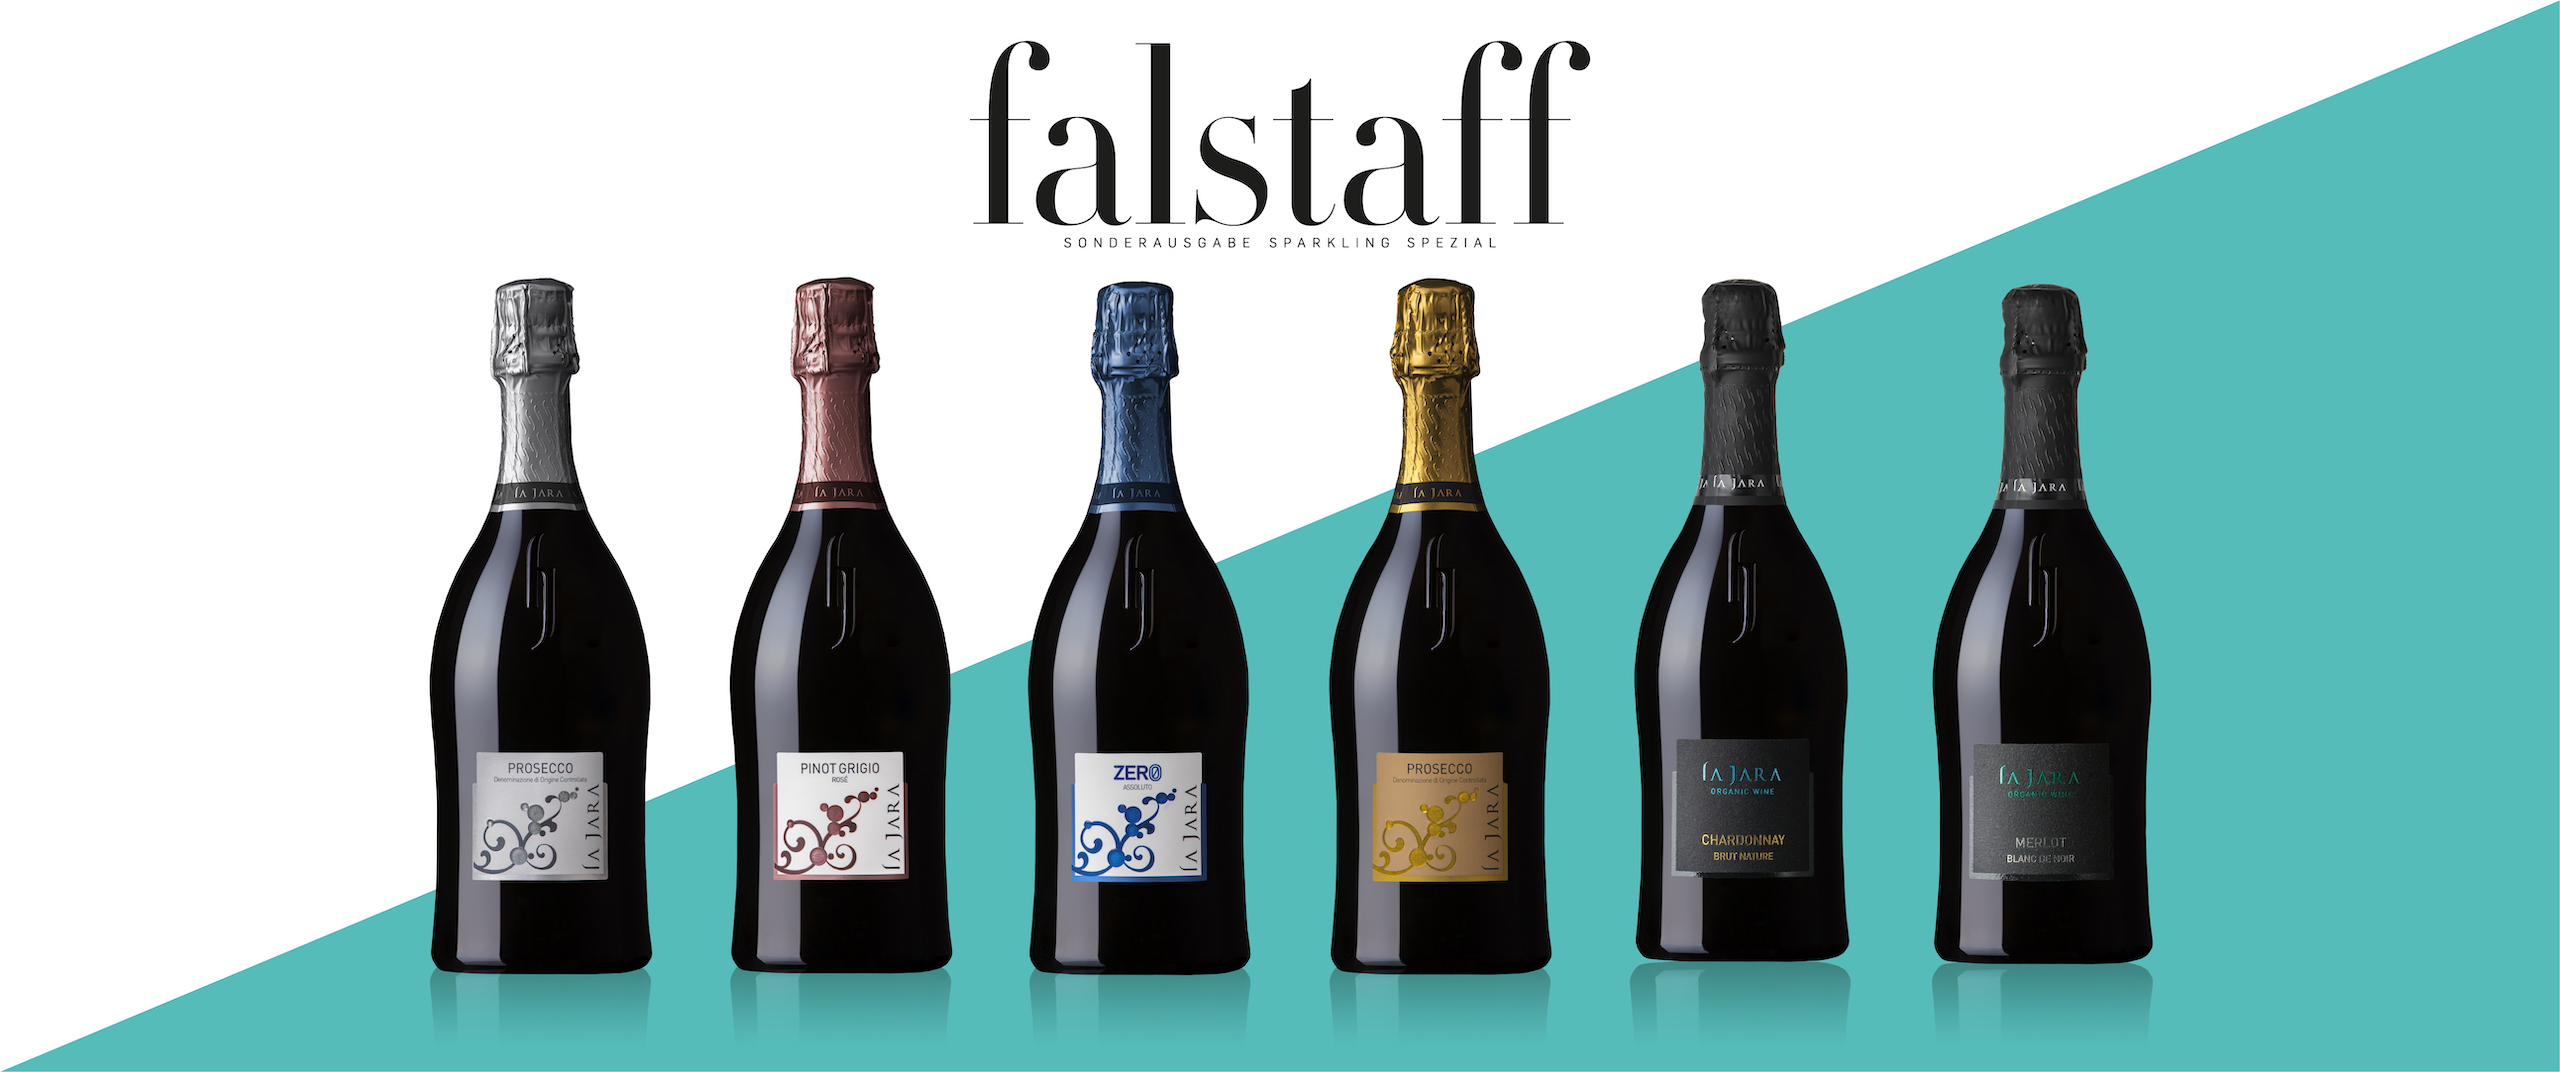 Falstaff Tasting Results 2020